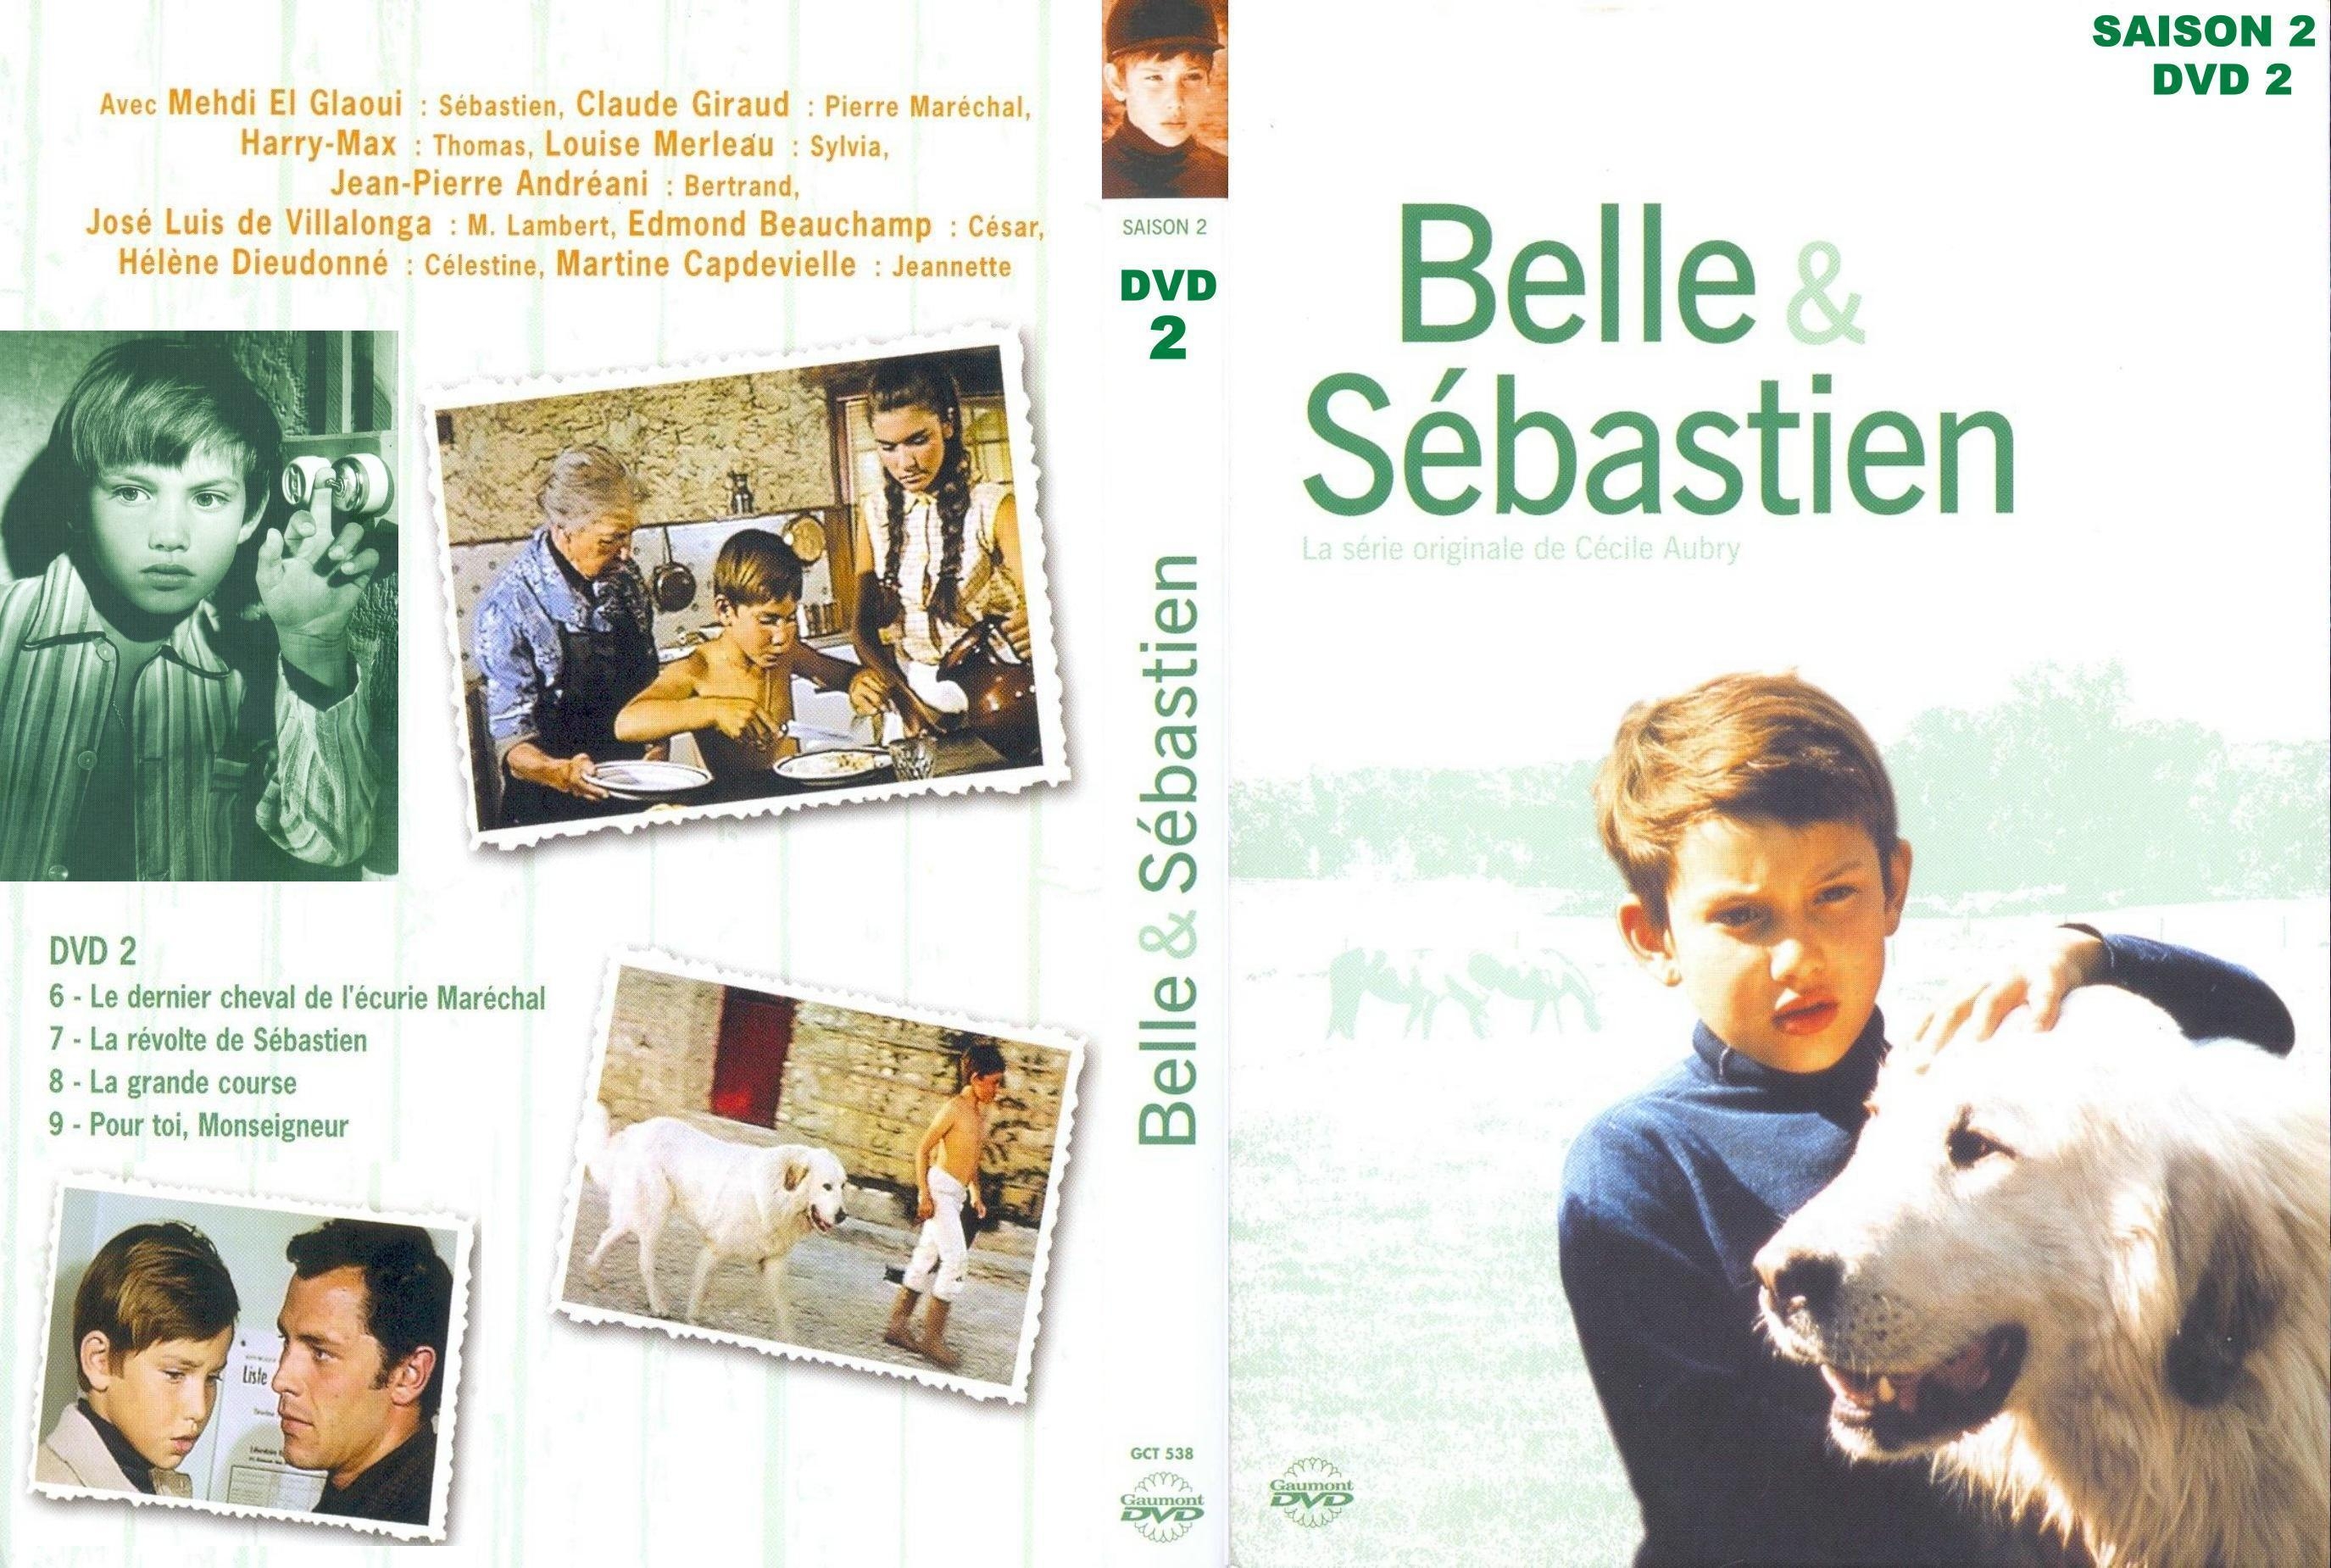 Jaquette DVD Belle et Sebastien Saison 2 dvd 2